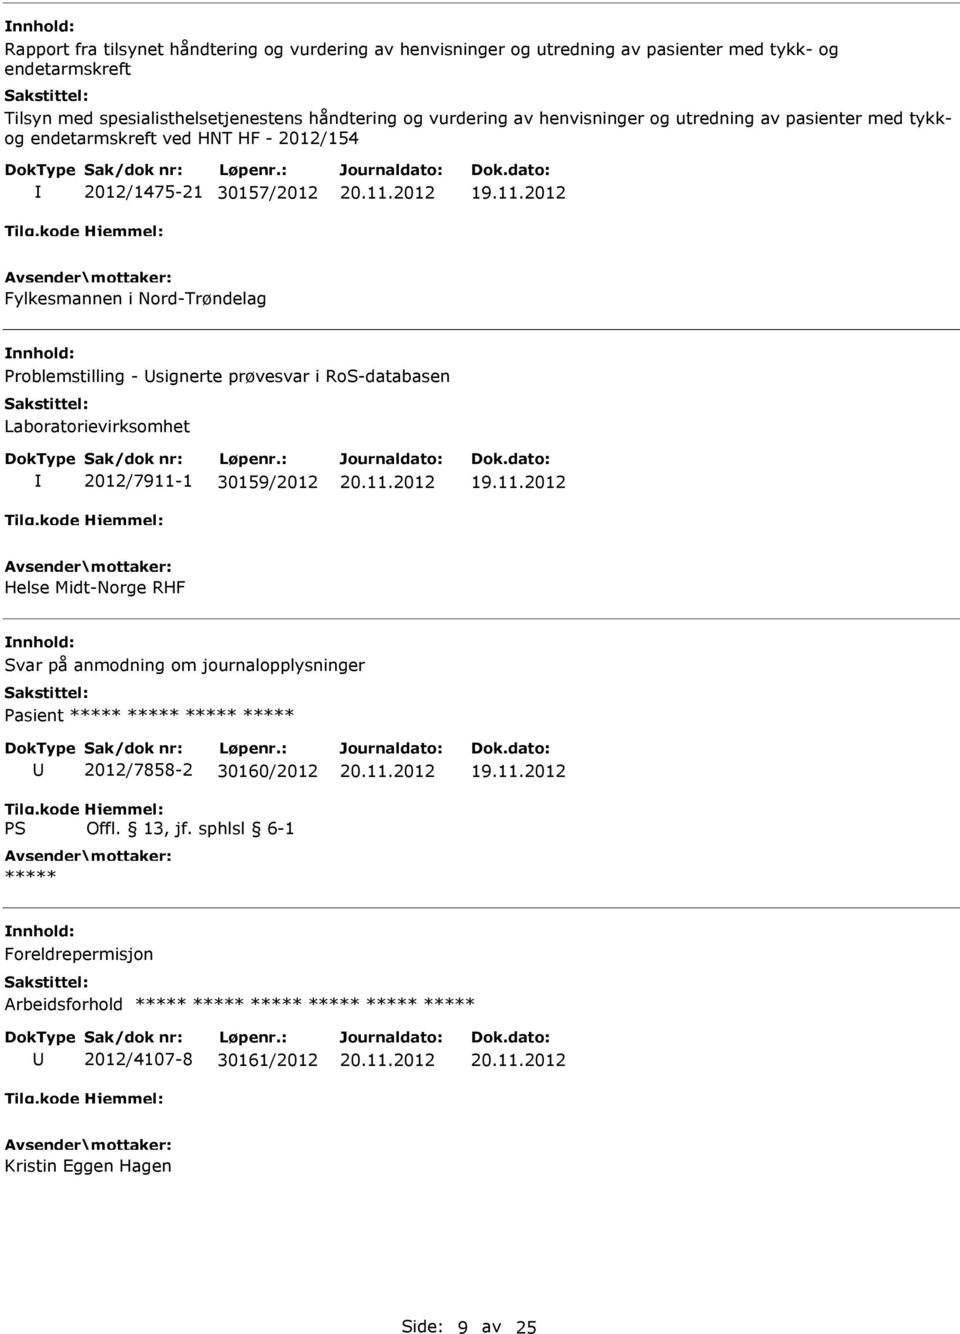 2012 Fylkesmannen i Nord-Trøndelag Problemstilling - signerte prøvesvar i RoS-databasen Laboratorievirksomhet 2012/7911-